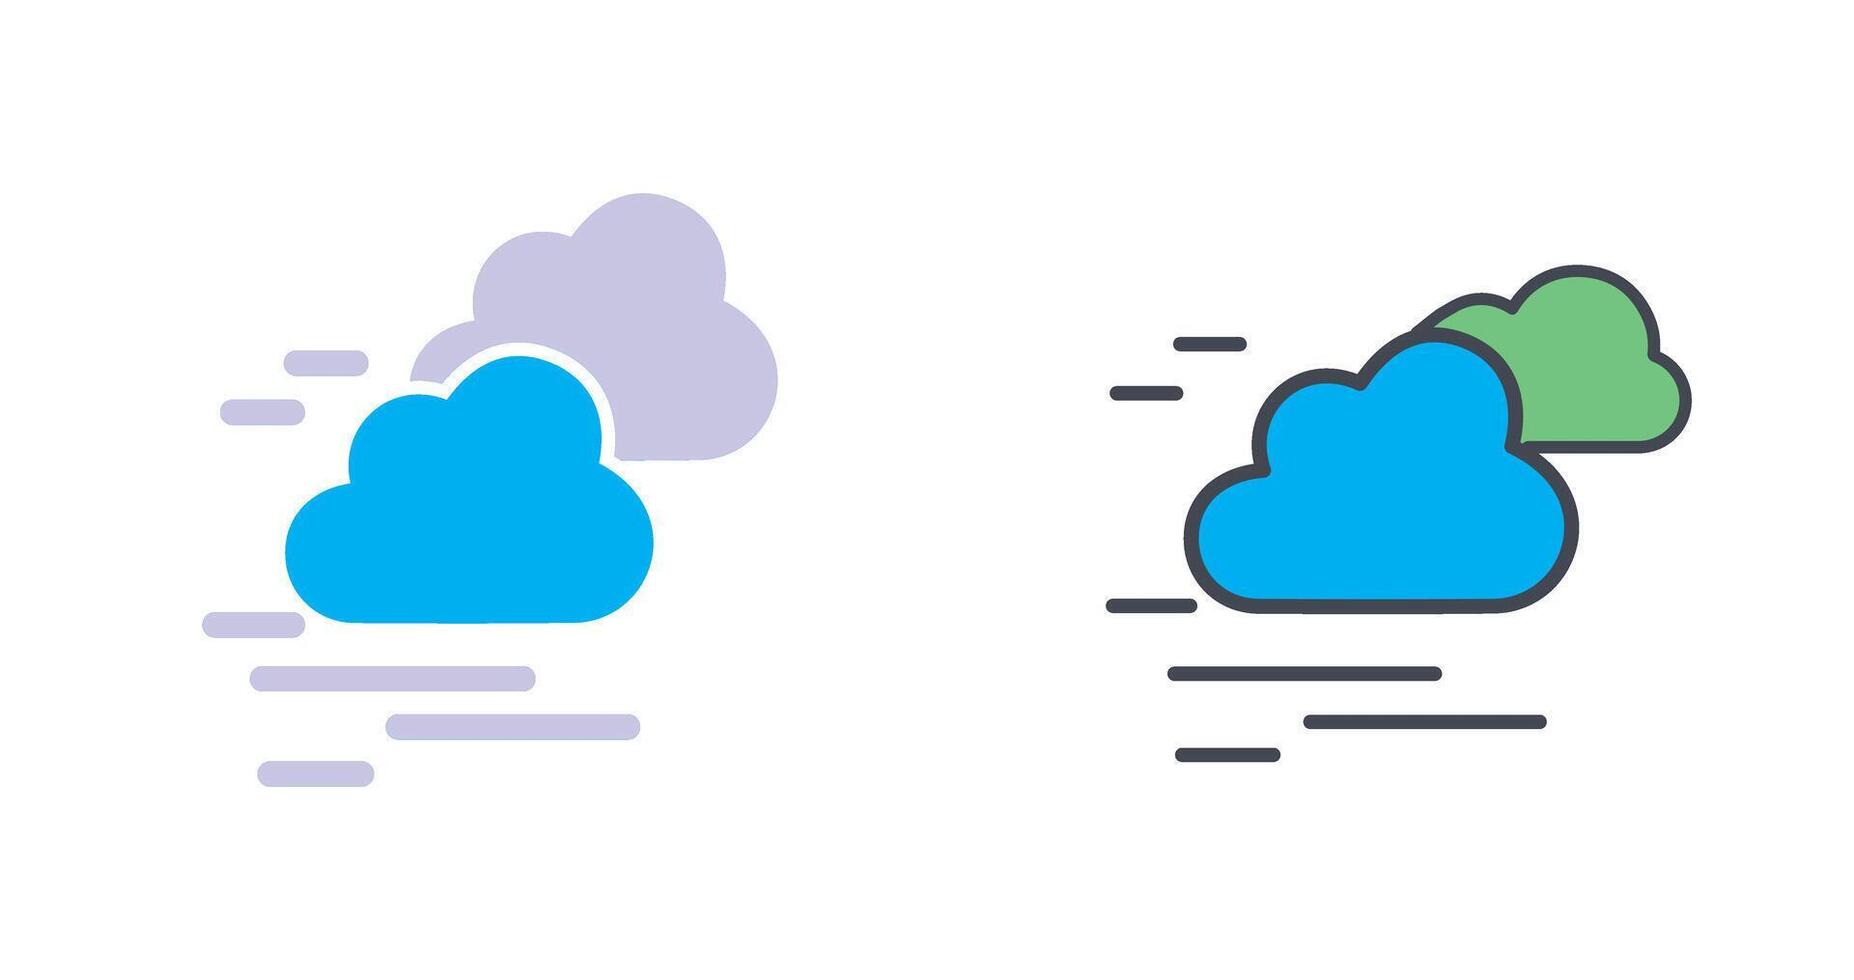 Cloud Icon Design vector